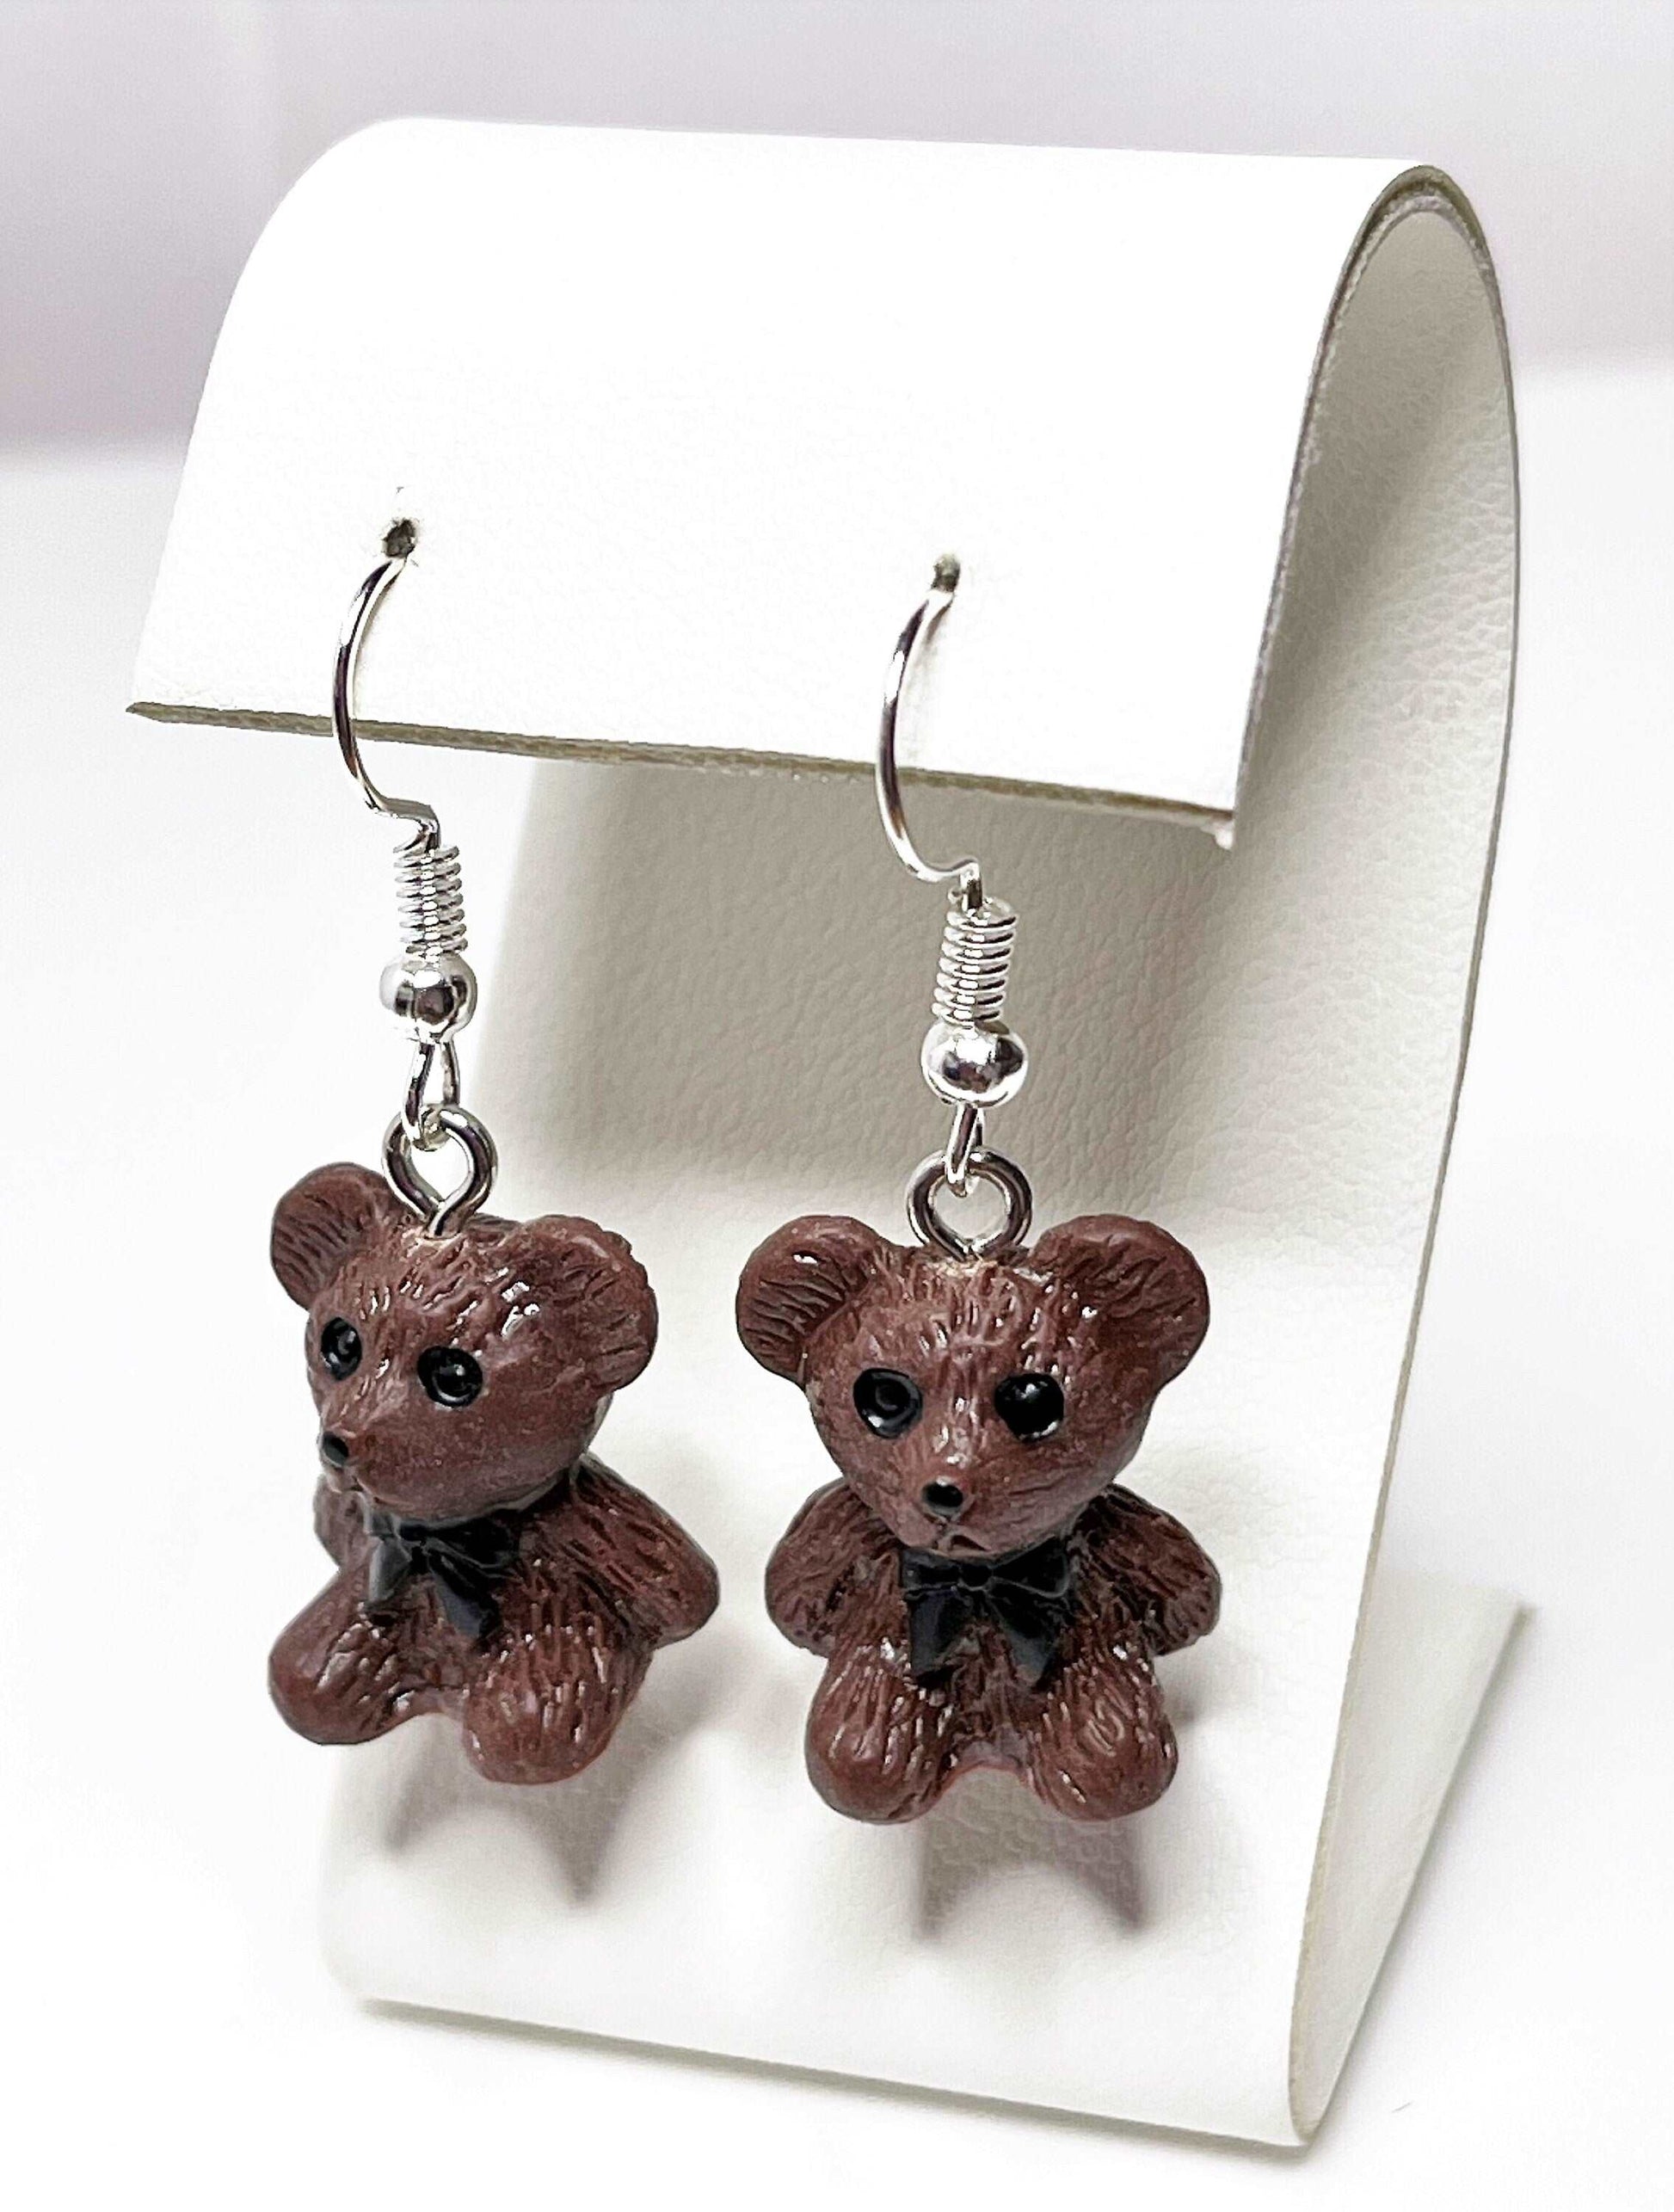 Cute Teddy Bear Earrings, Silver Plated, Sterling Silver, Brown Novelty Bear Earrings, Earrings for Women, Retro Teddy Lovers, Quirky Drops